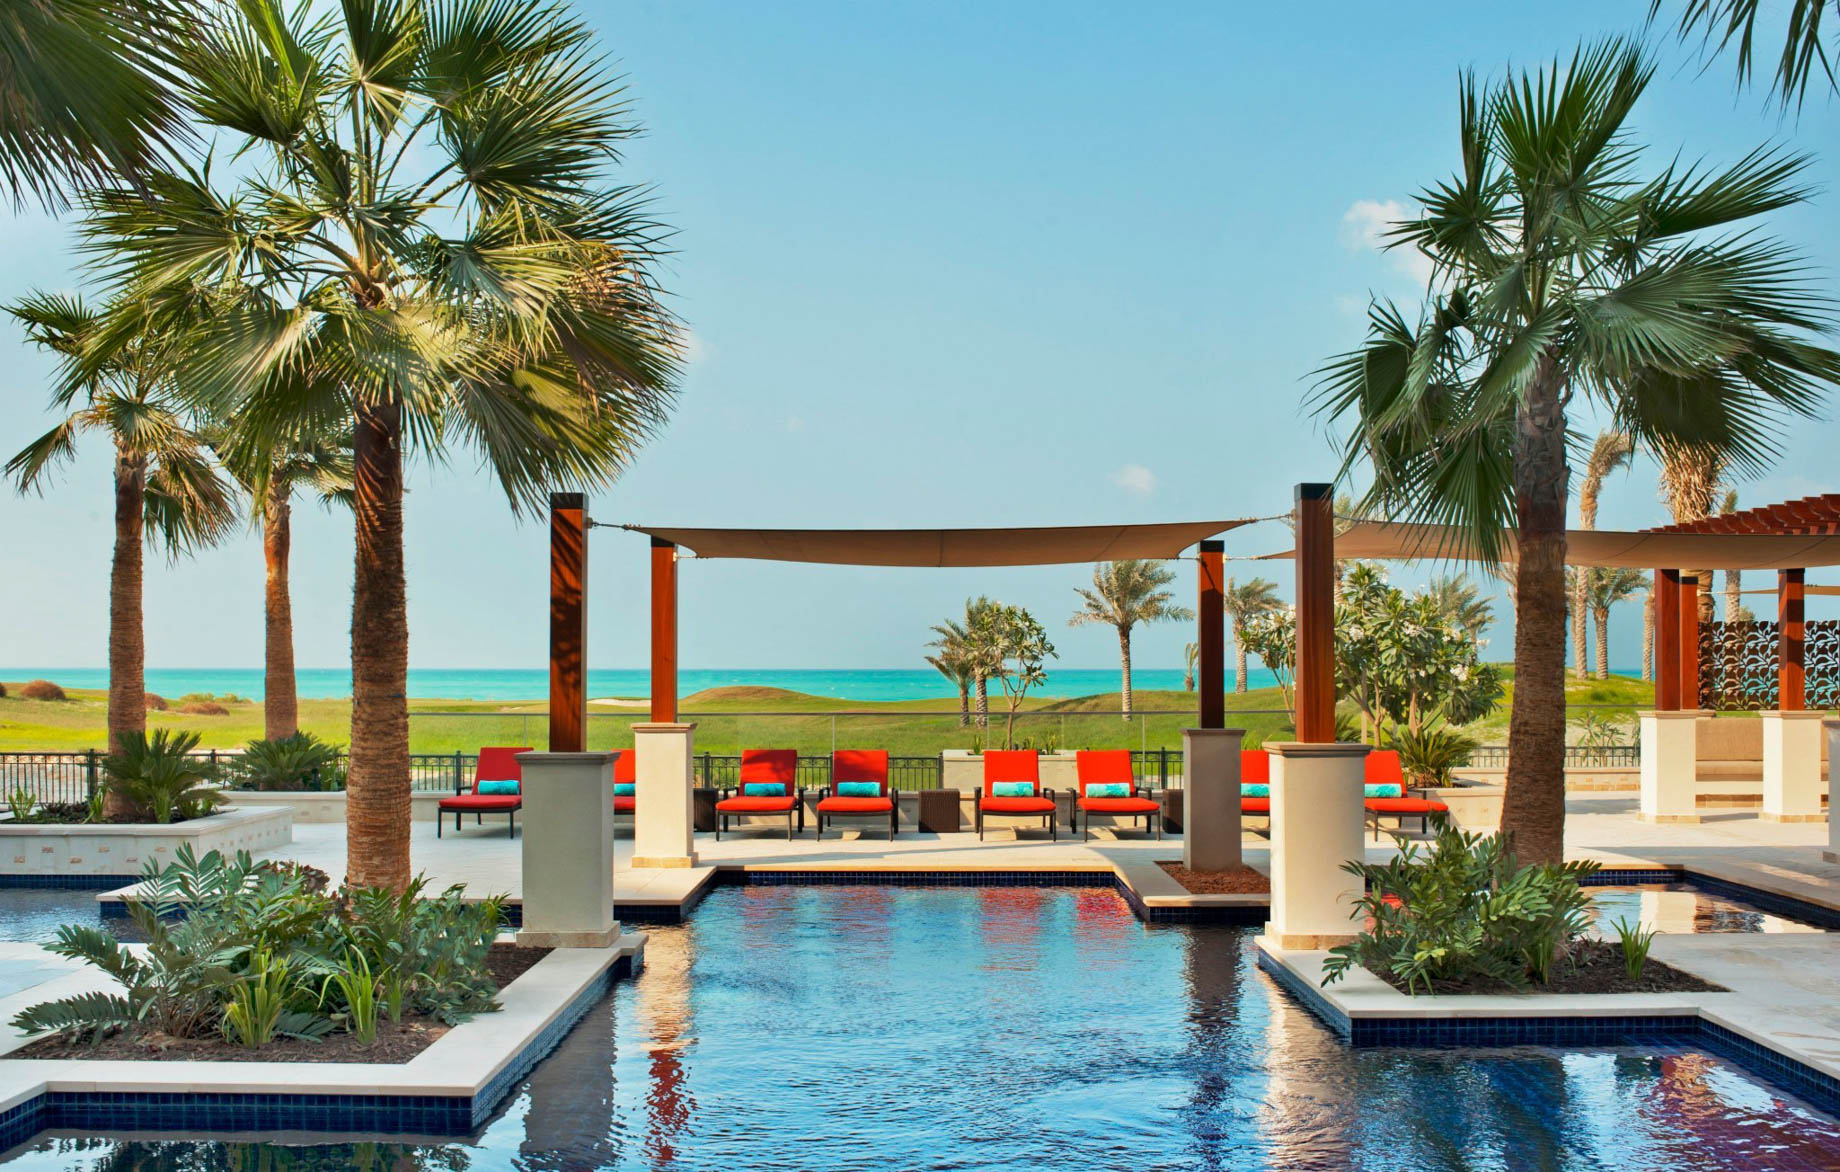 The St. Regis Saadiyat Island Resort - Abu Dhabi, UAE - Exterior Pool Day